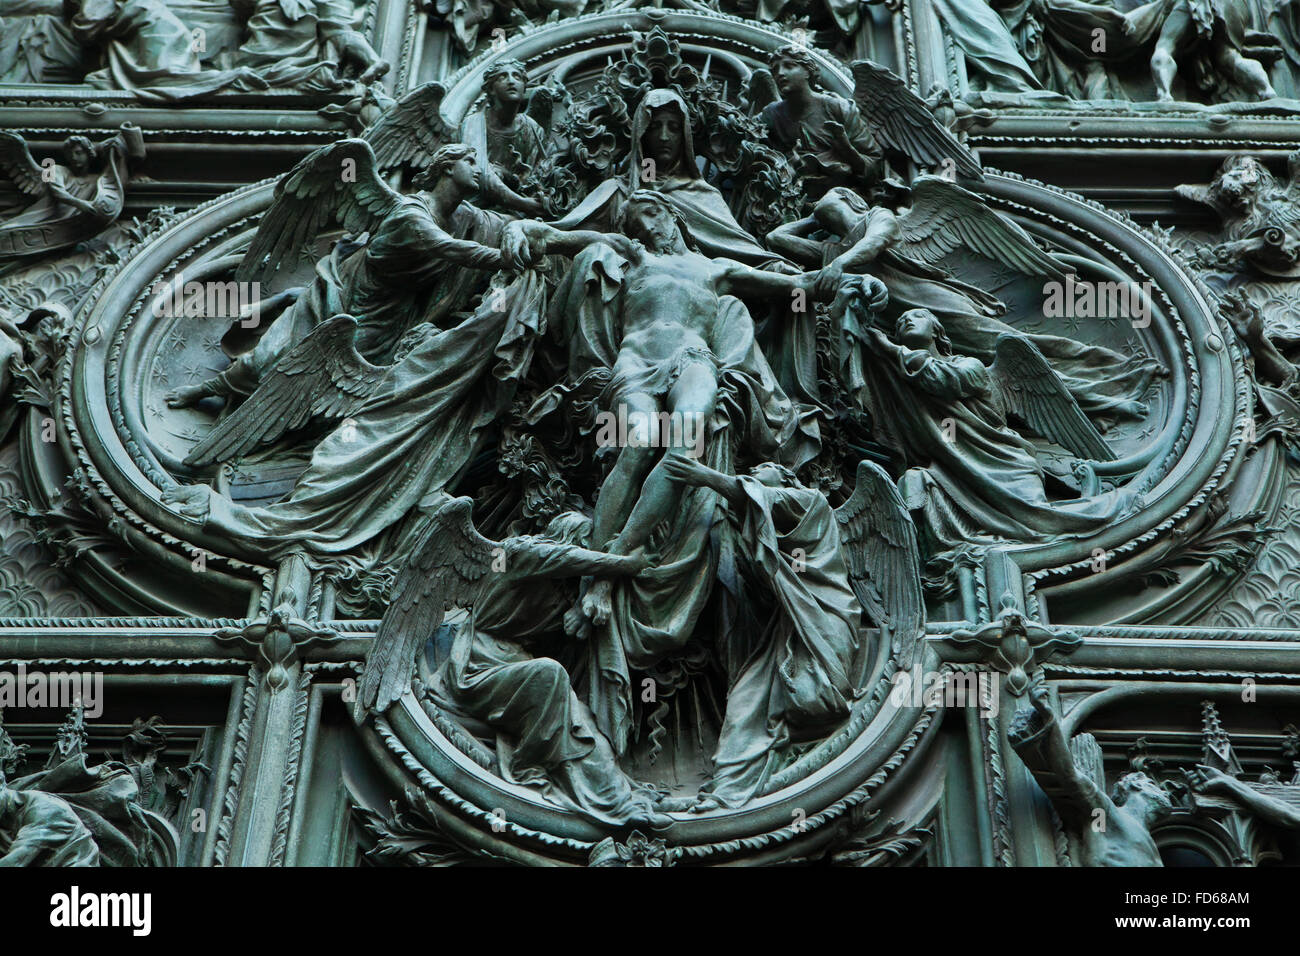 L'ascension de Jésus. Détail de la porte de bronze de la principale cathédrale de Milan (Duomo di Milano) à Milan, Italie. La porte de bronze a été conçu par le sculpteur italien Ludovico Pogliaghi en 1894-1908. Banque D'Images